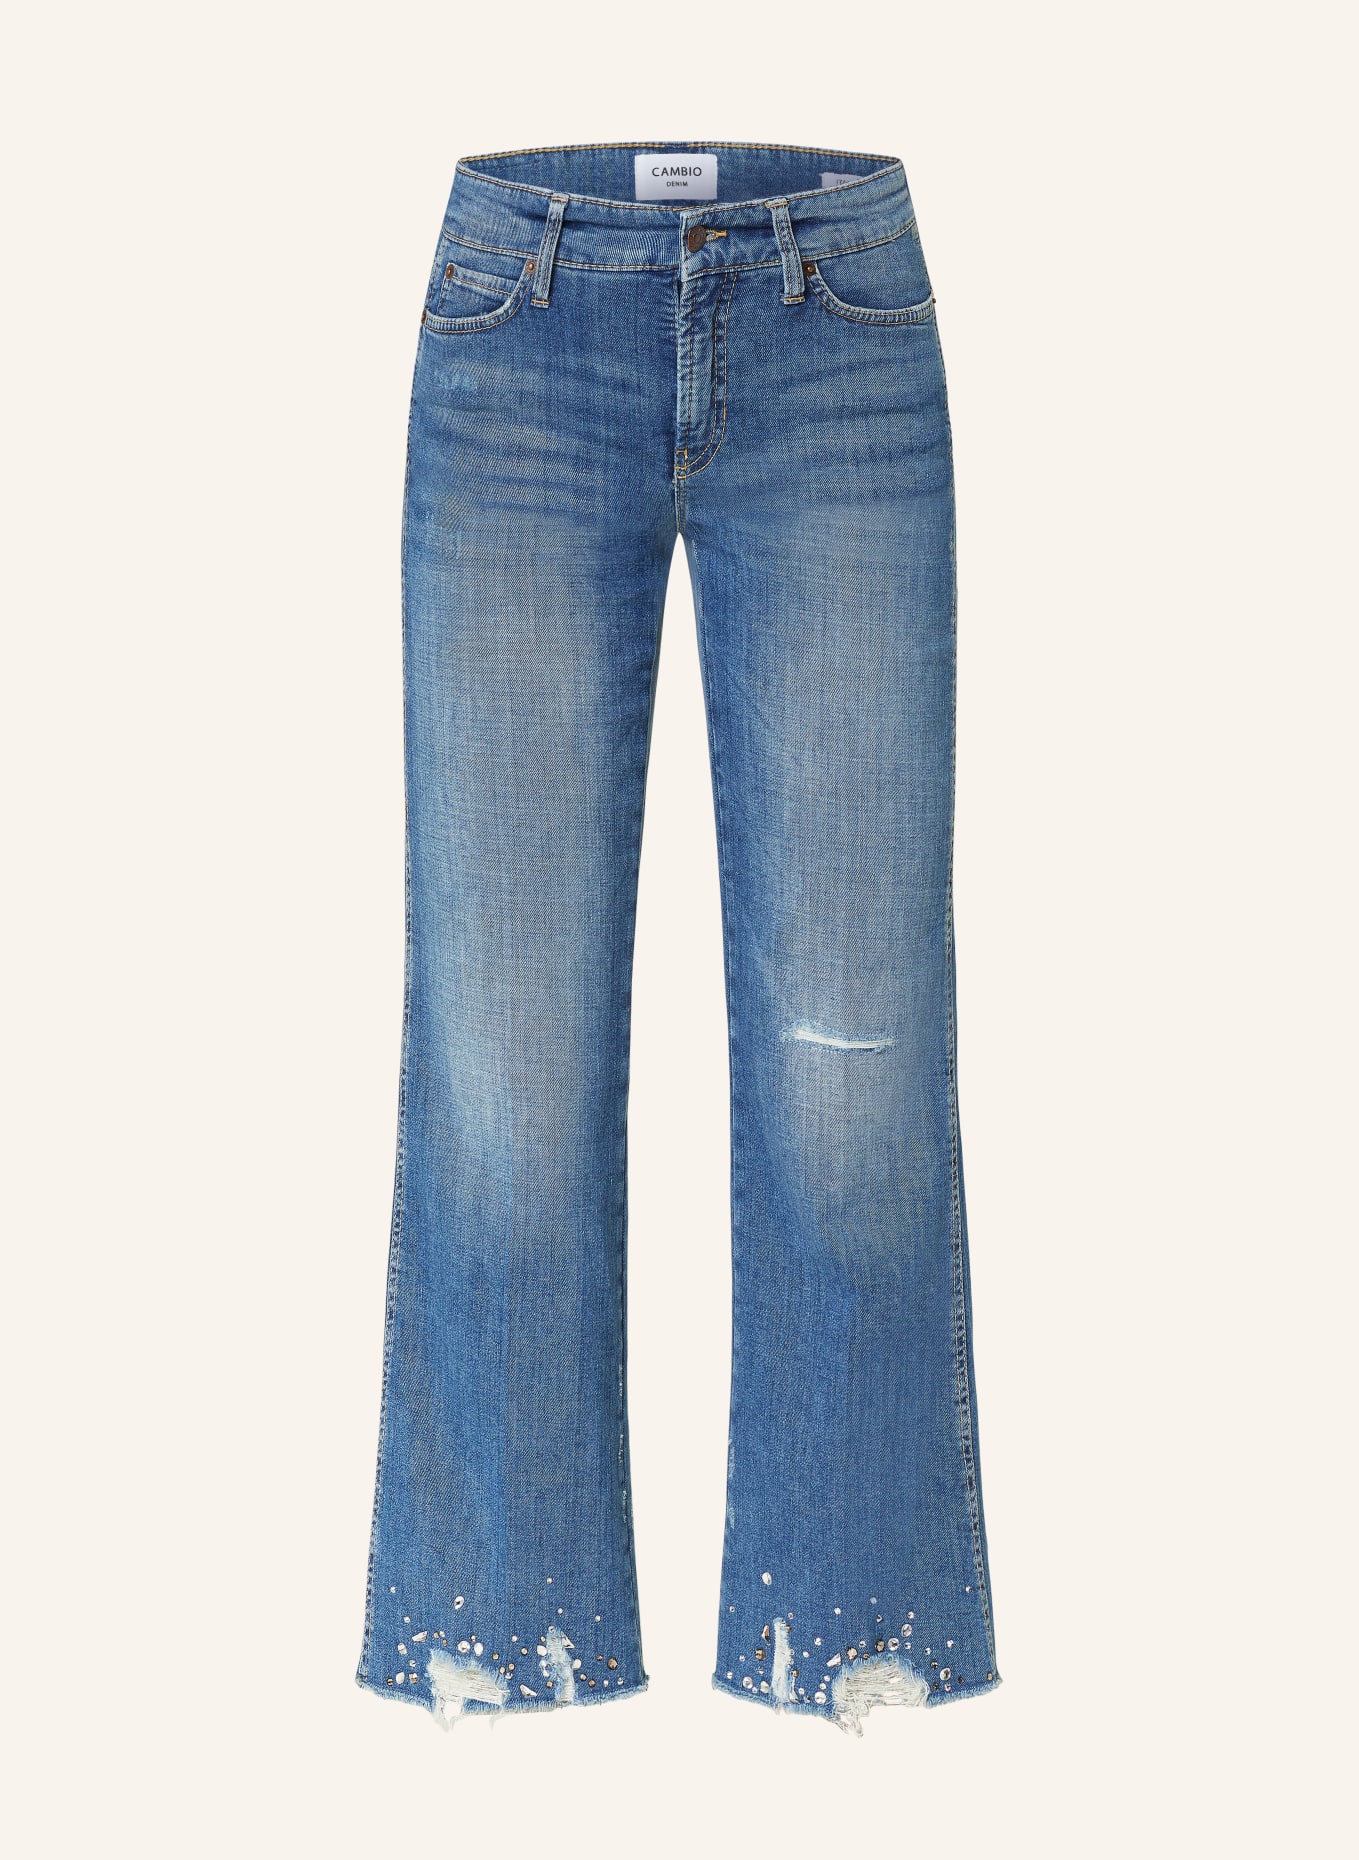 CAMBIO 7/8-Jeans FRANCESCA mit Schmucksteinen, Farbe: 5214 vintage dark destroy hem (Bild 1)